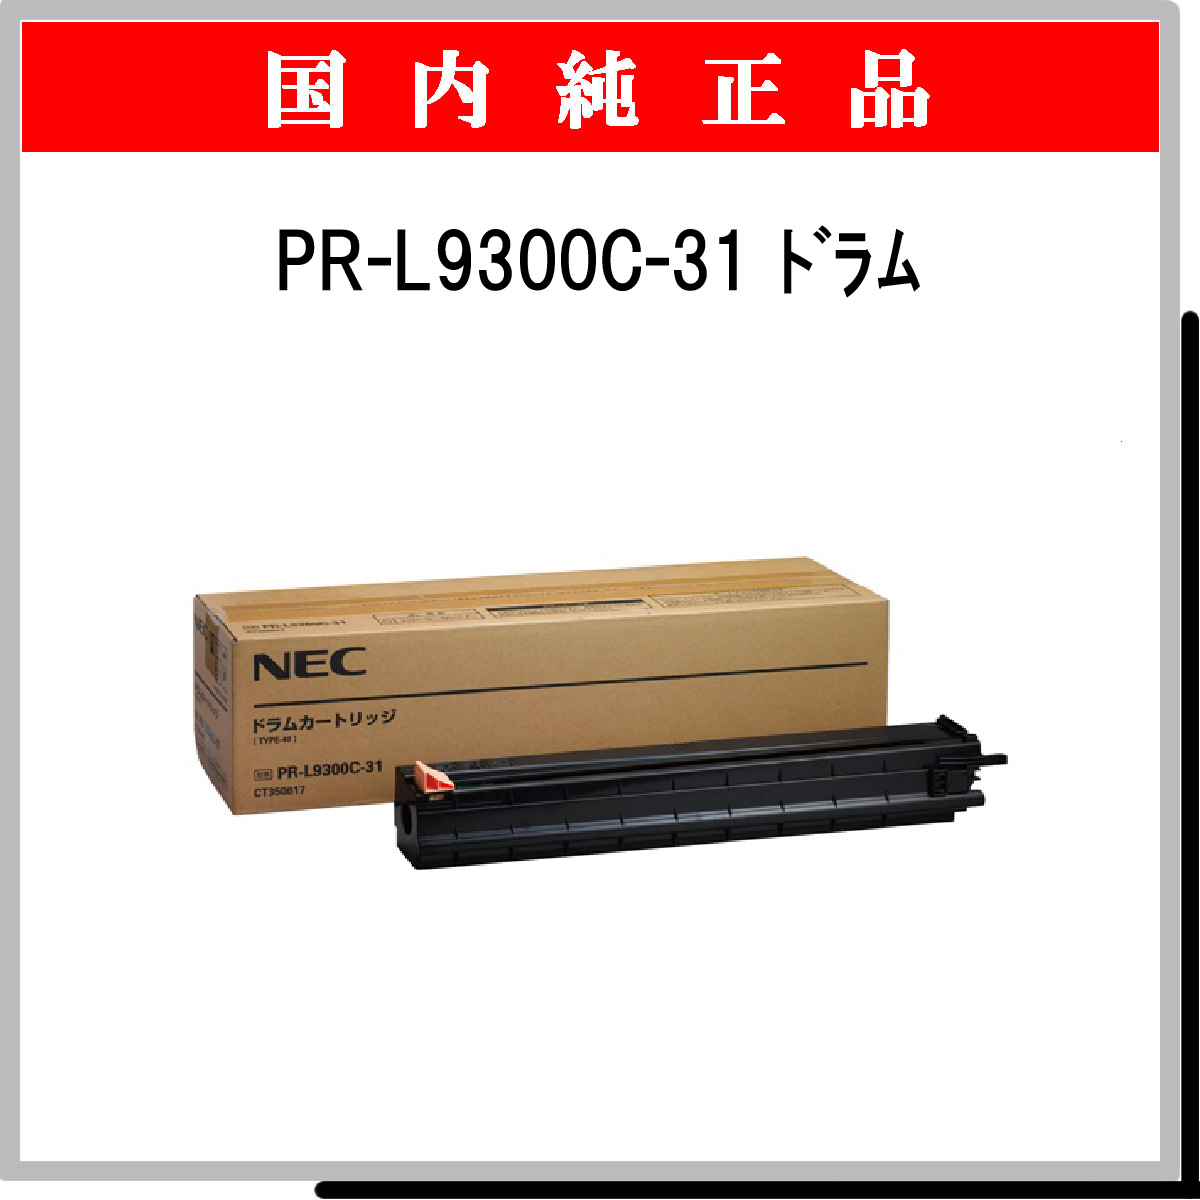 PR-L9300C-31 純正